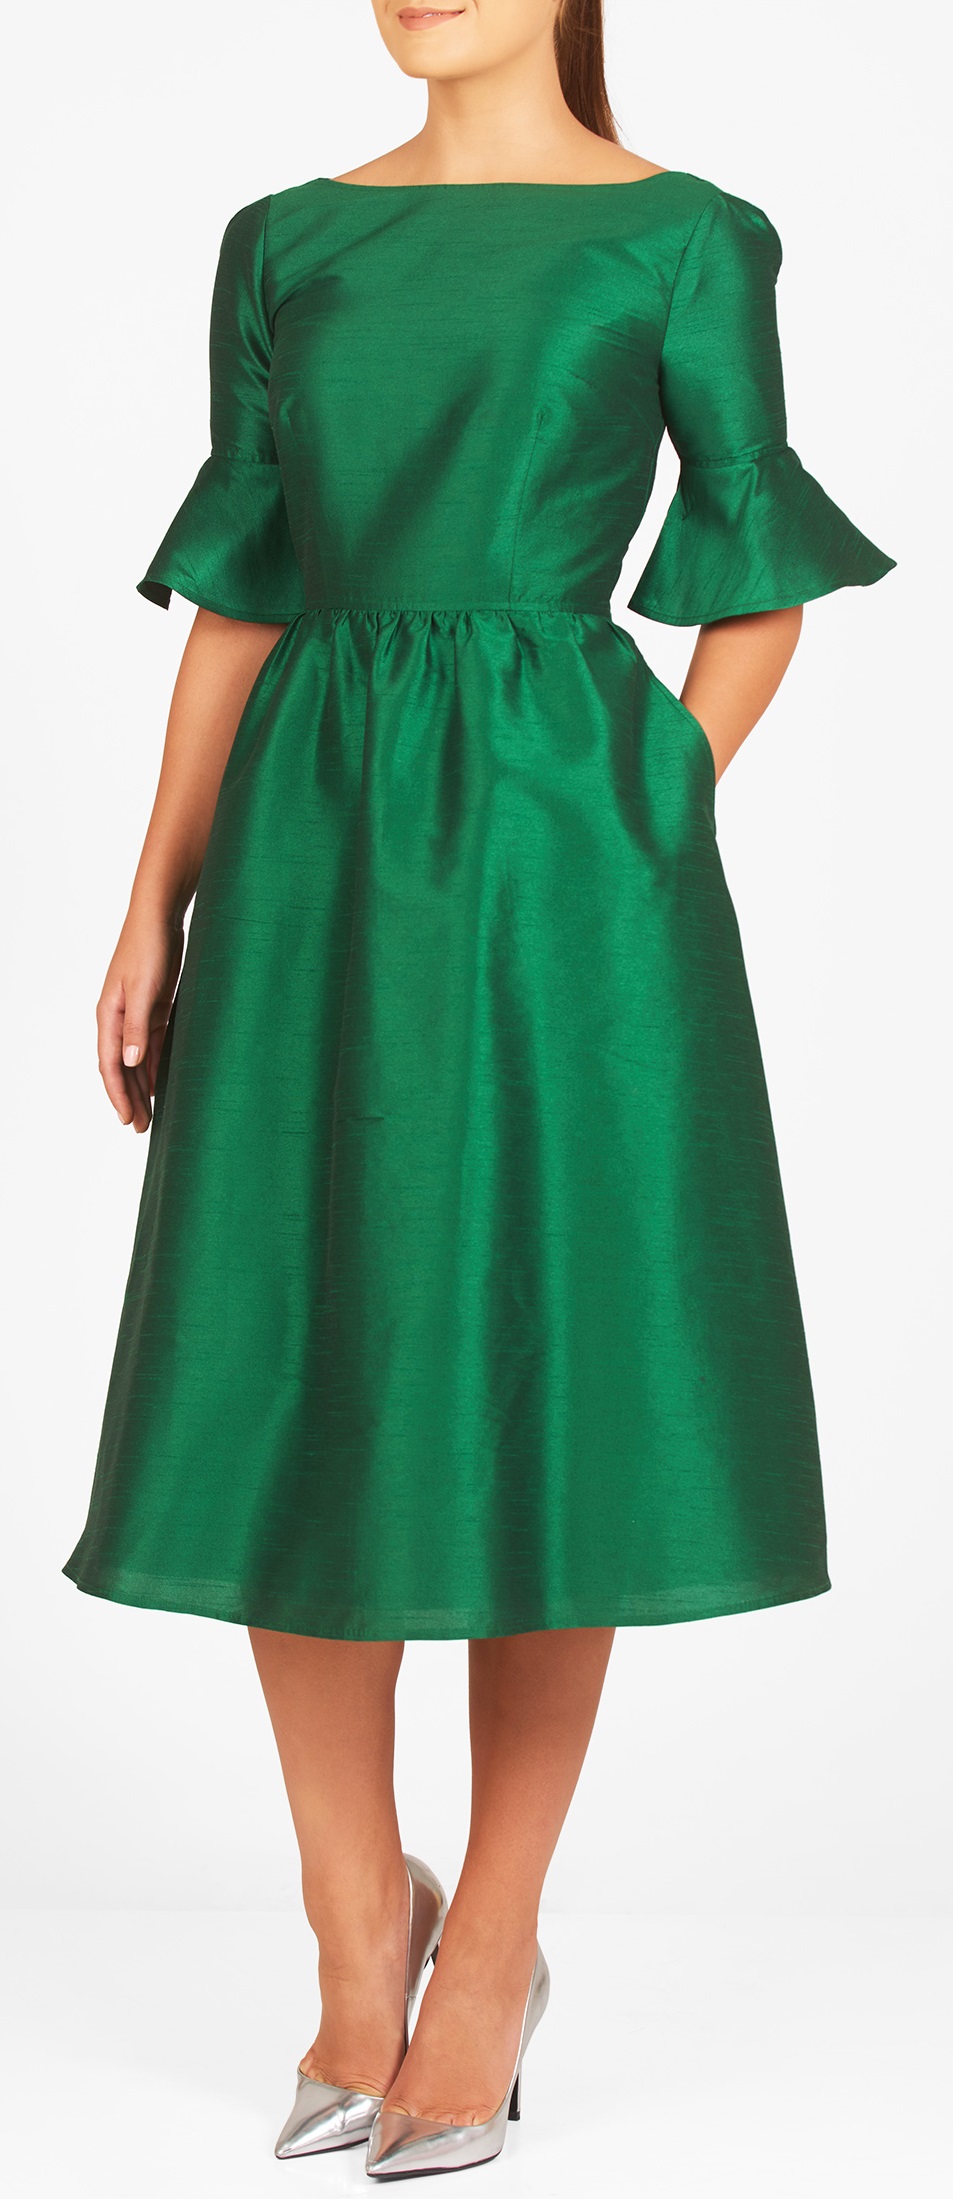 plus-size-holiday-green-dress-alexa-webb-13 - Alexa Webb